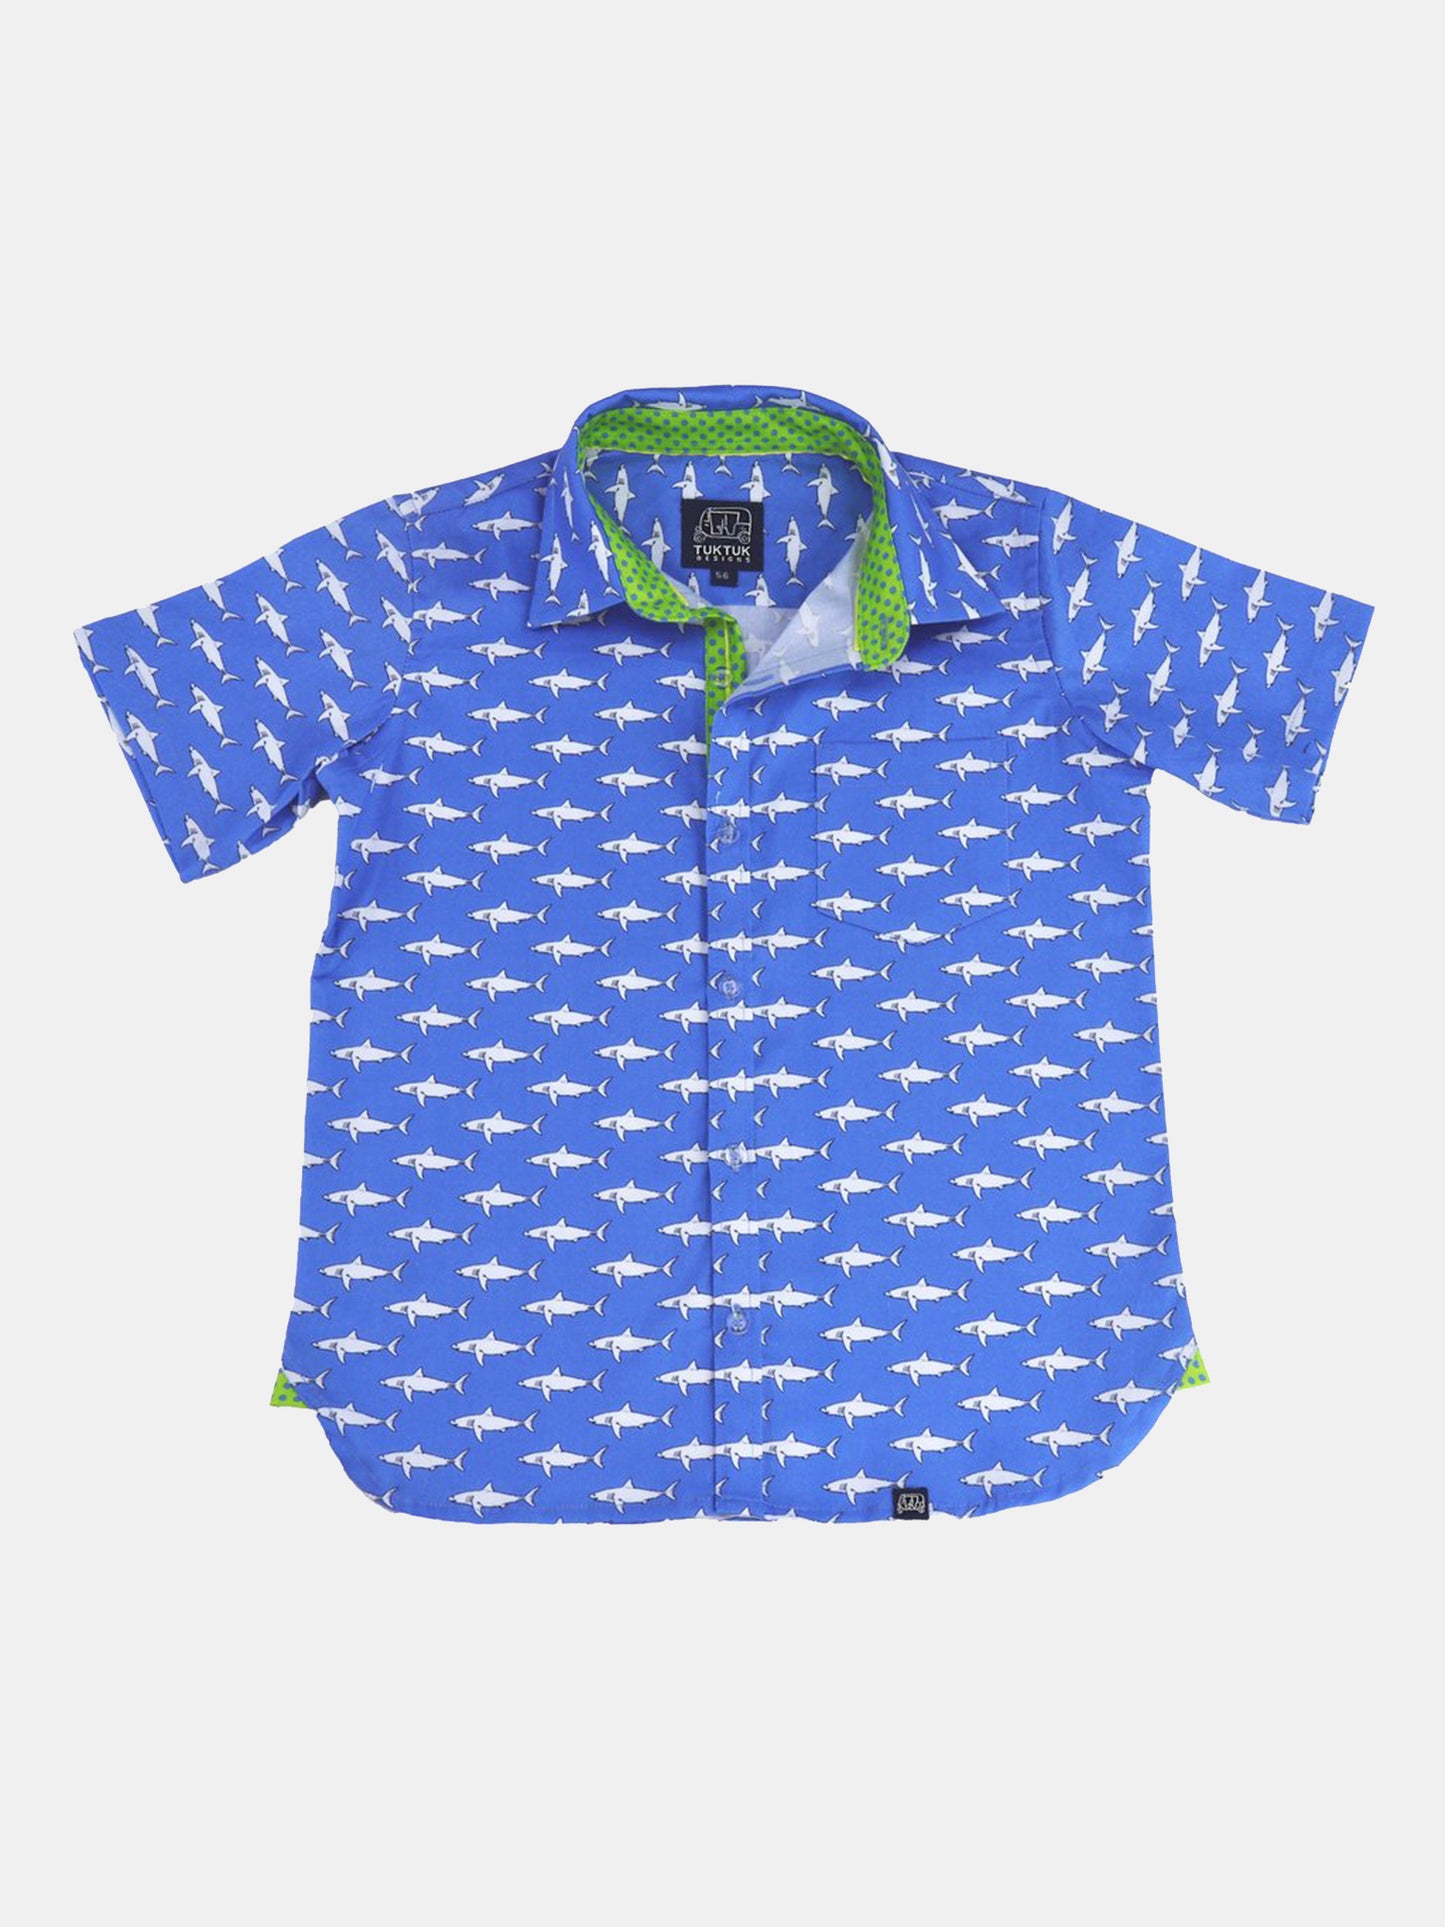 Tuk Tuk Designs Boys' Mako Shark Shirt